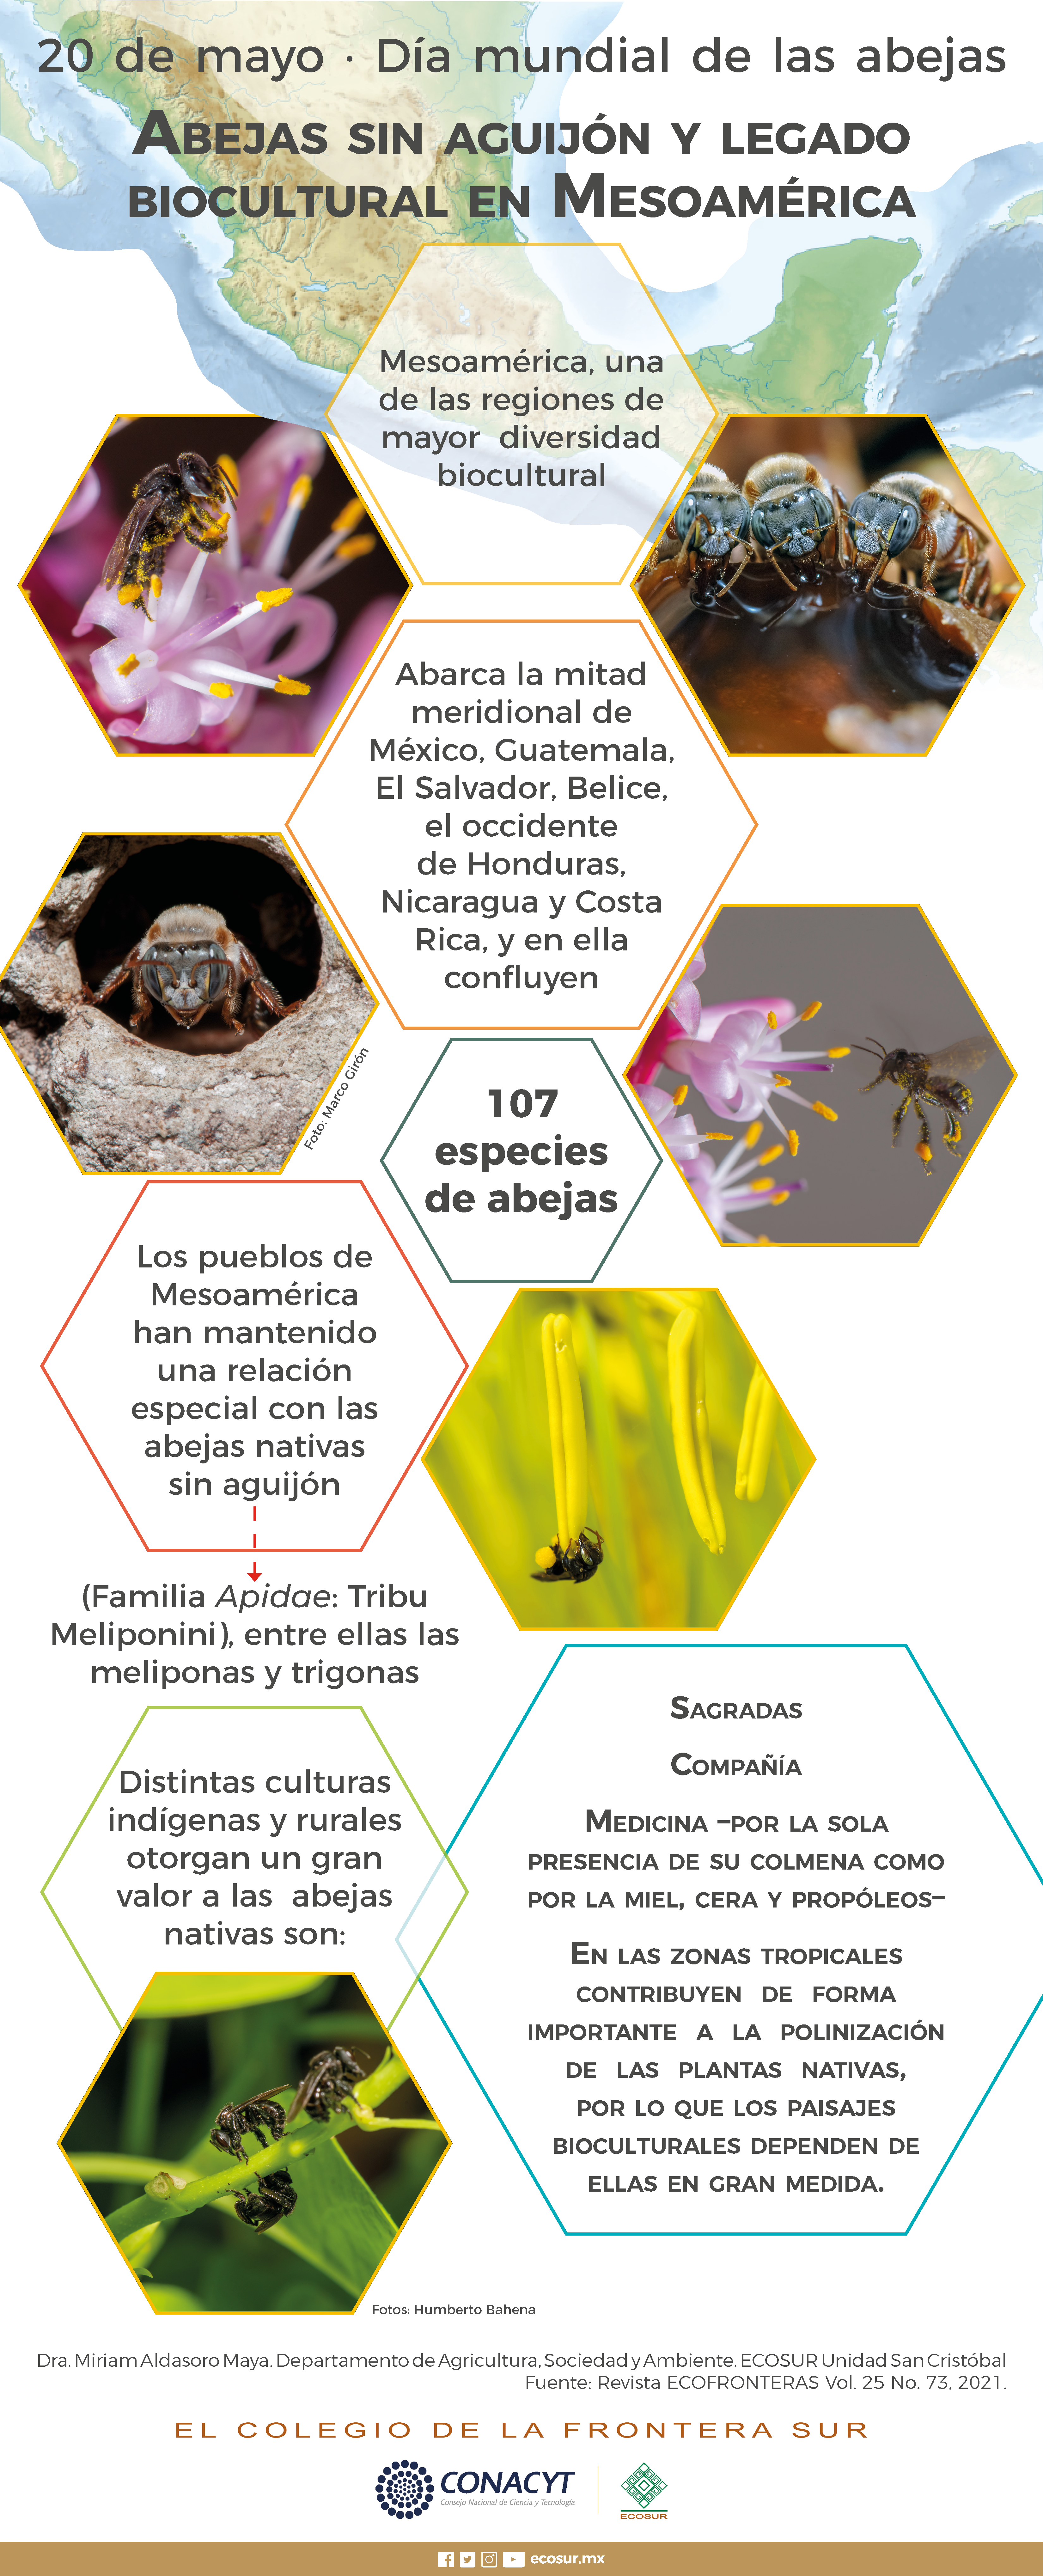 20 de mayo día internacional de las abejas. Abejas sin aguijón y legado biocultural en Mesoamérica.